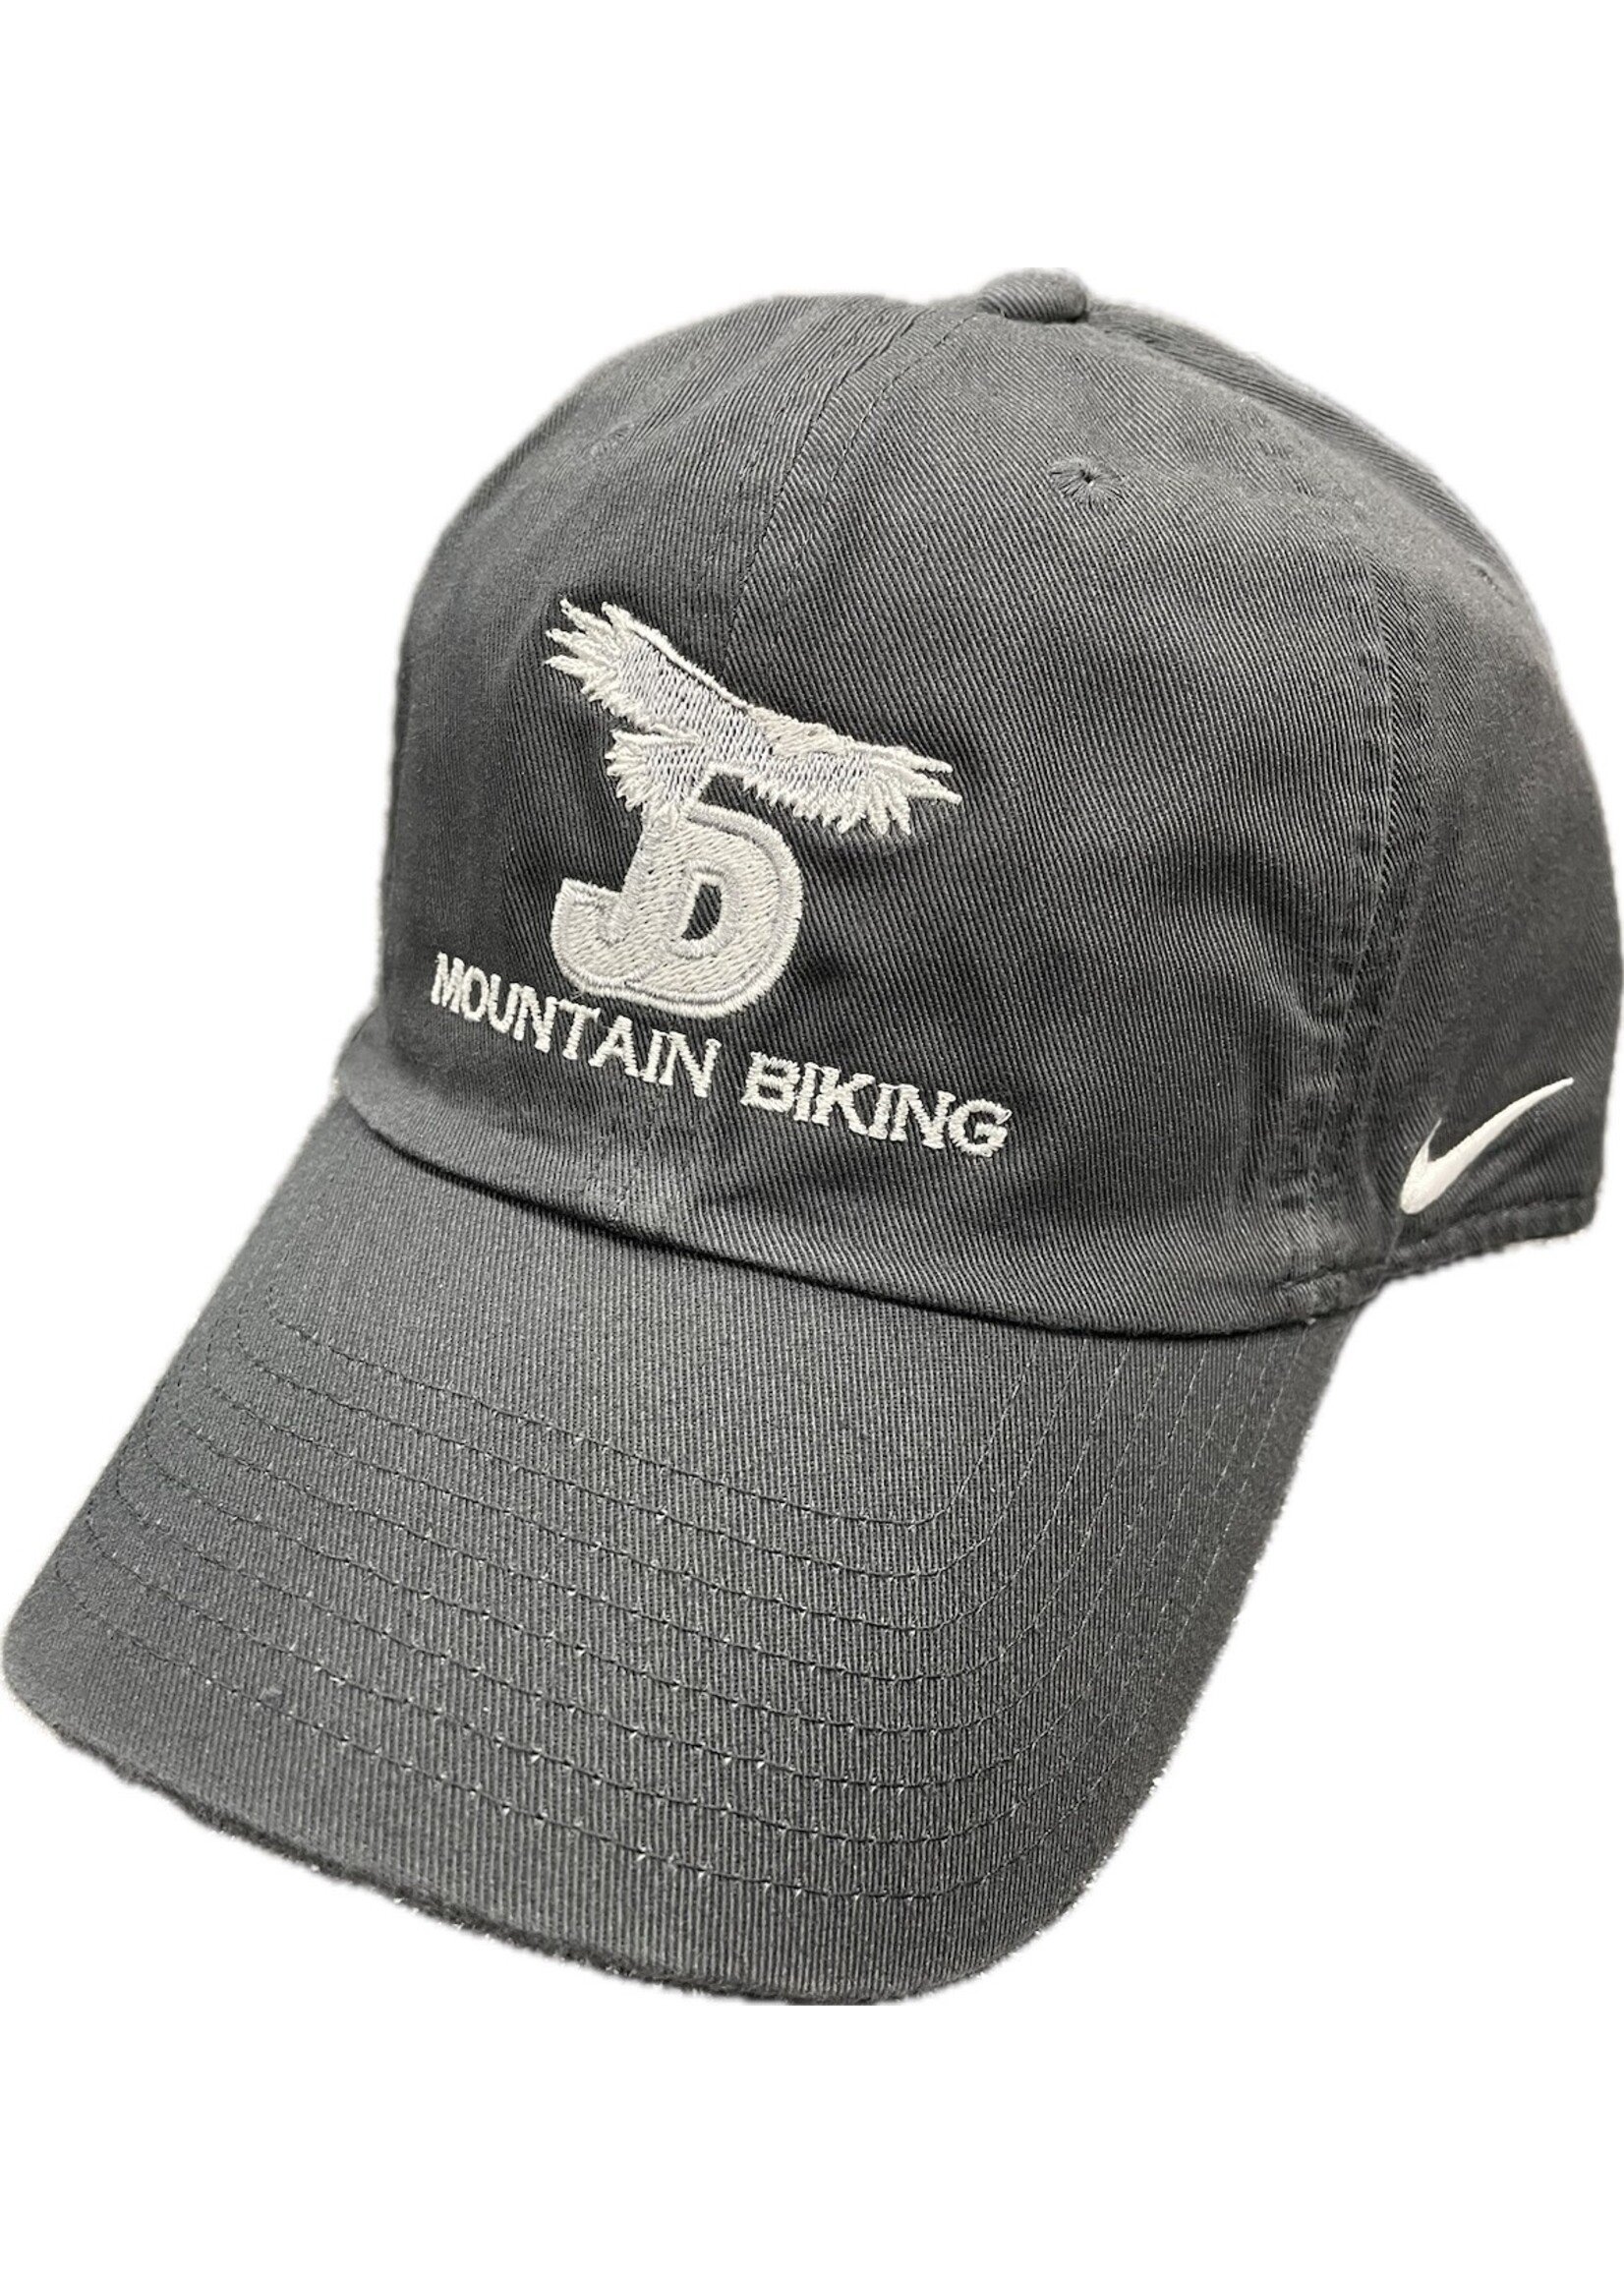 NON-UNIFORM JD Eagle Mountain Biking NIKE Hat